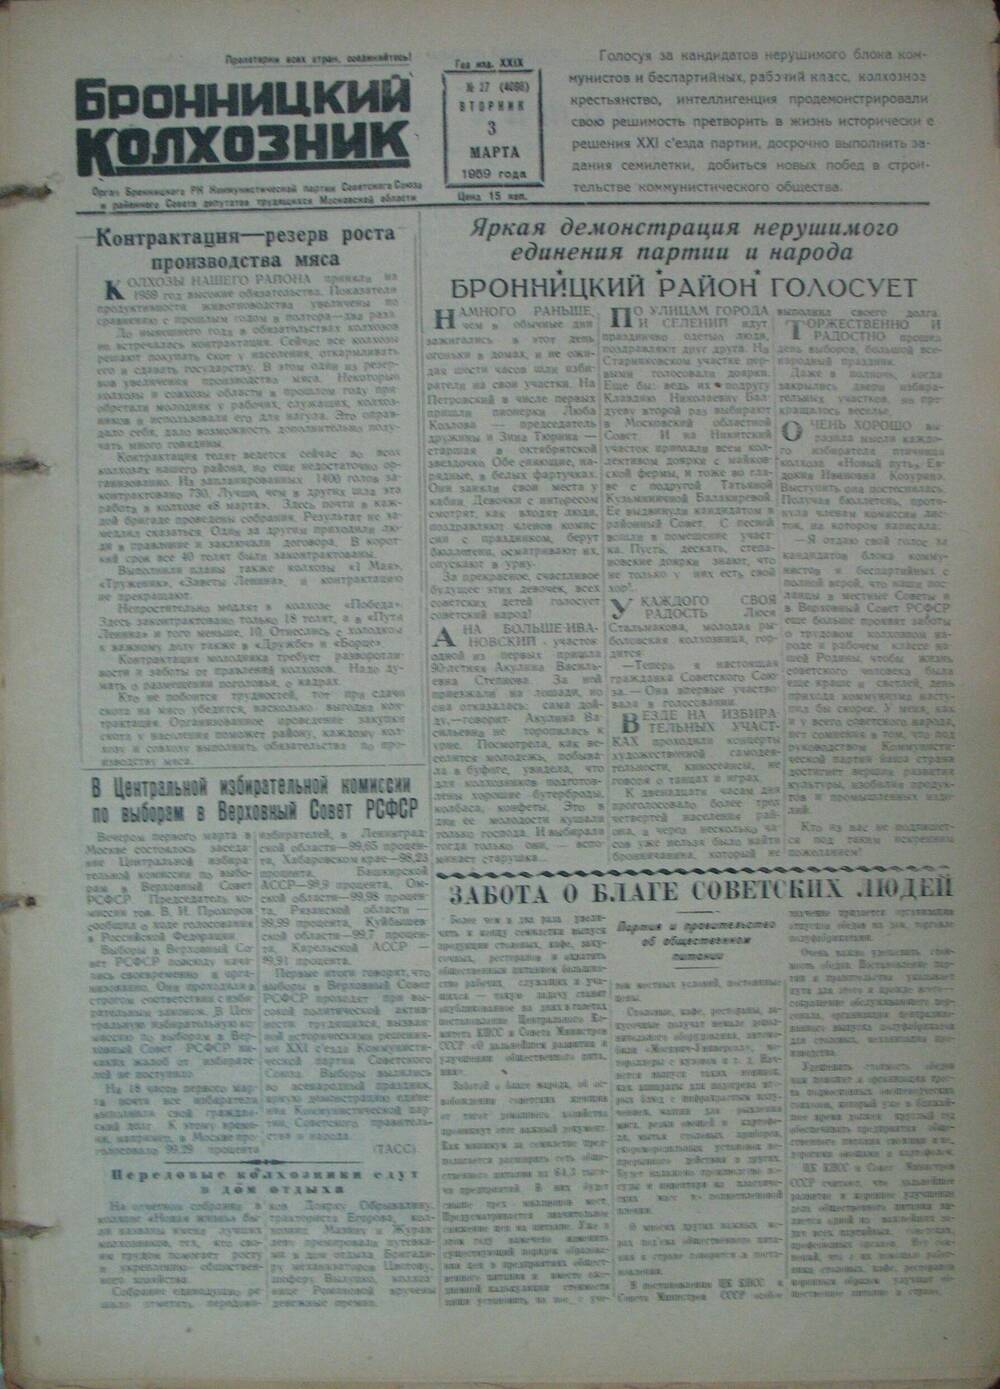 Бронницкий колхозник,  газета № 27 от 3 марта 1959г